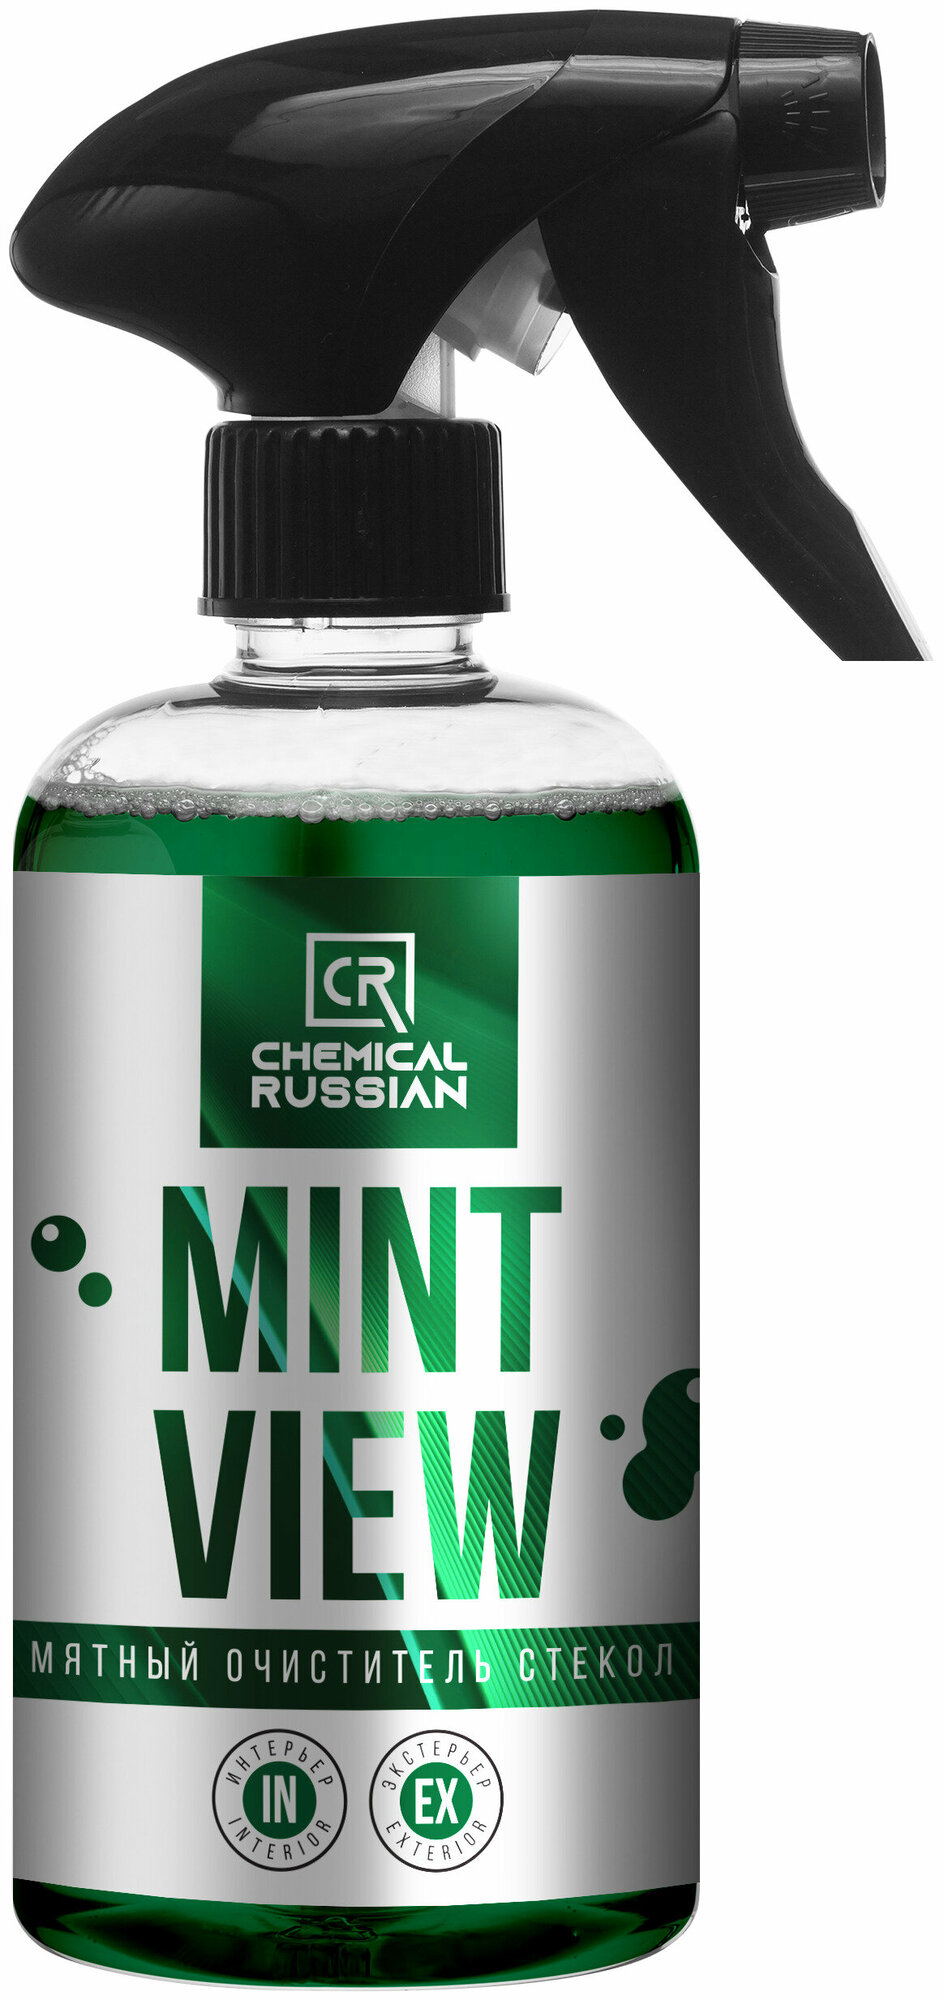 Chemical Russian Mint View - Мятный очиститель стекол 500 мл